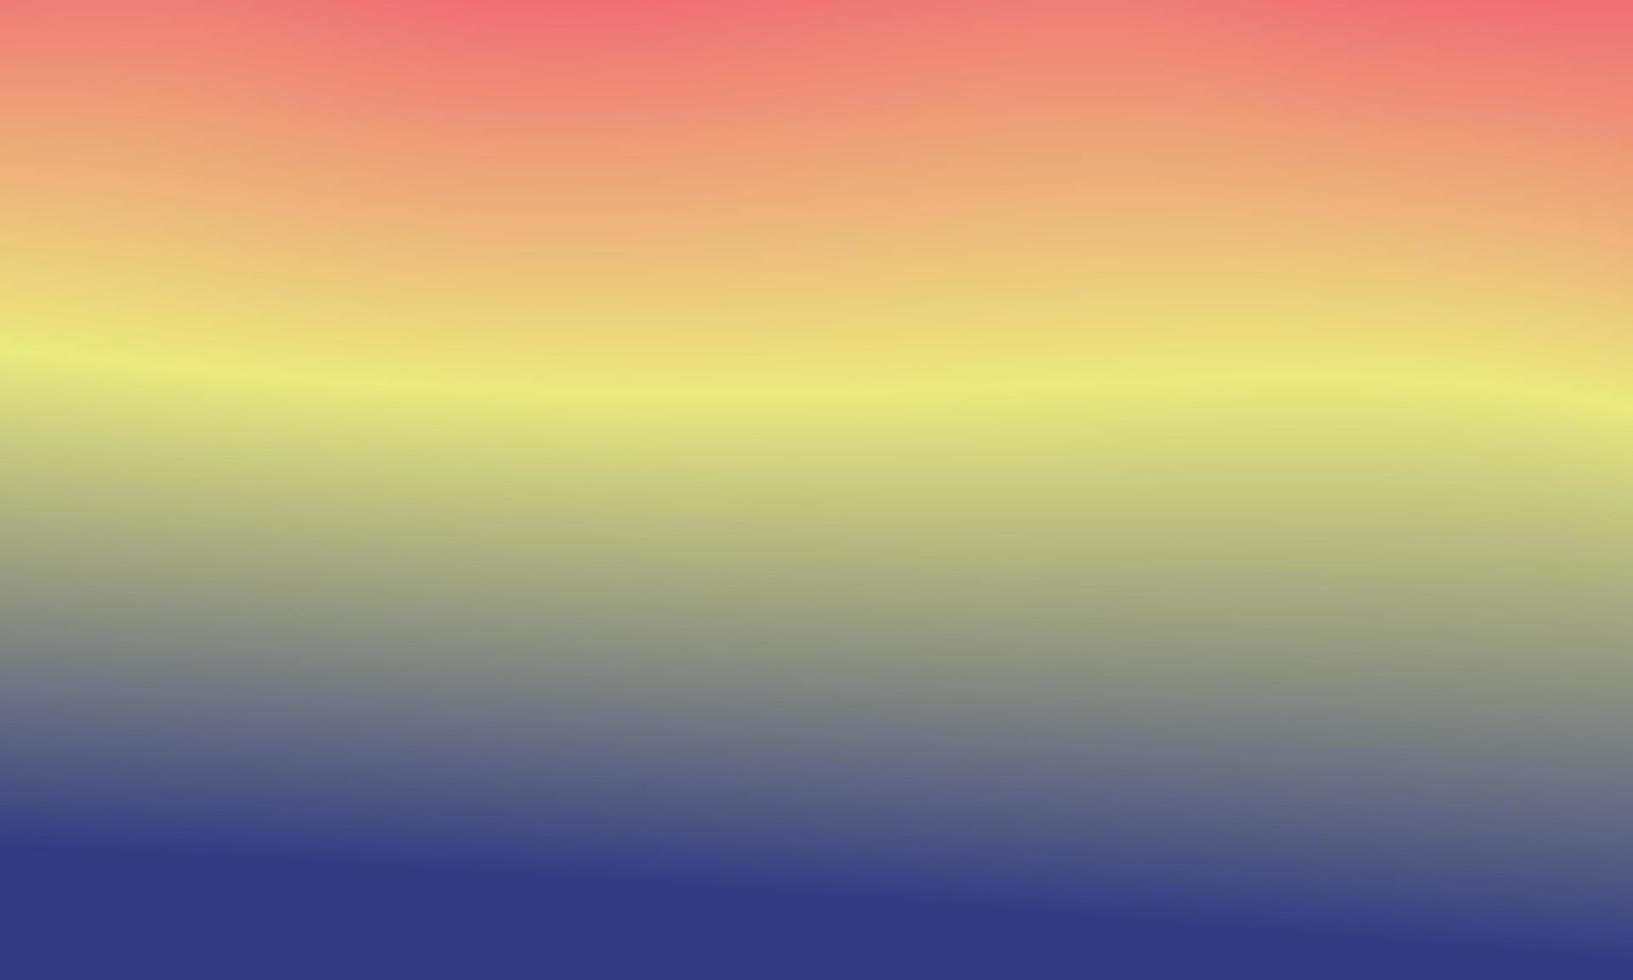 vacker färgglad gradient bakgrund. kombination av ljusa färger. mjuk och smidig konsistens. används för bakgrund vektor